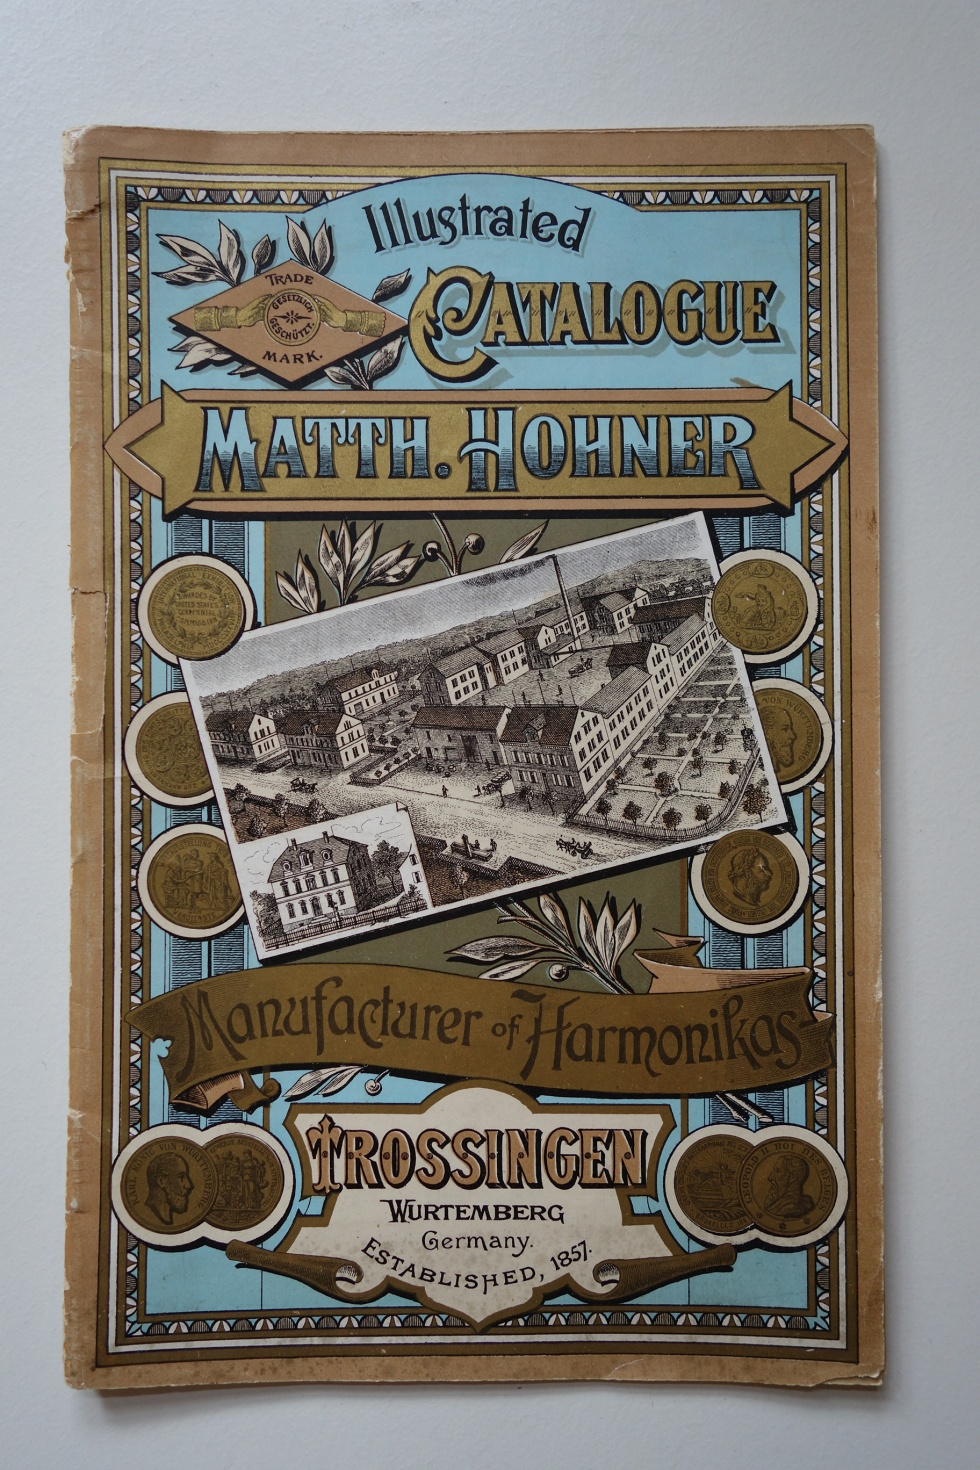 Katalog der Firma Hohner